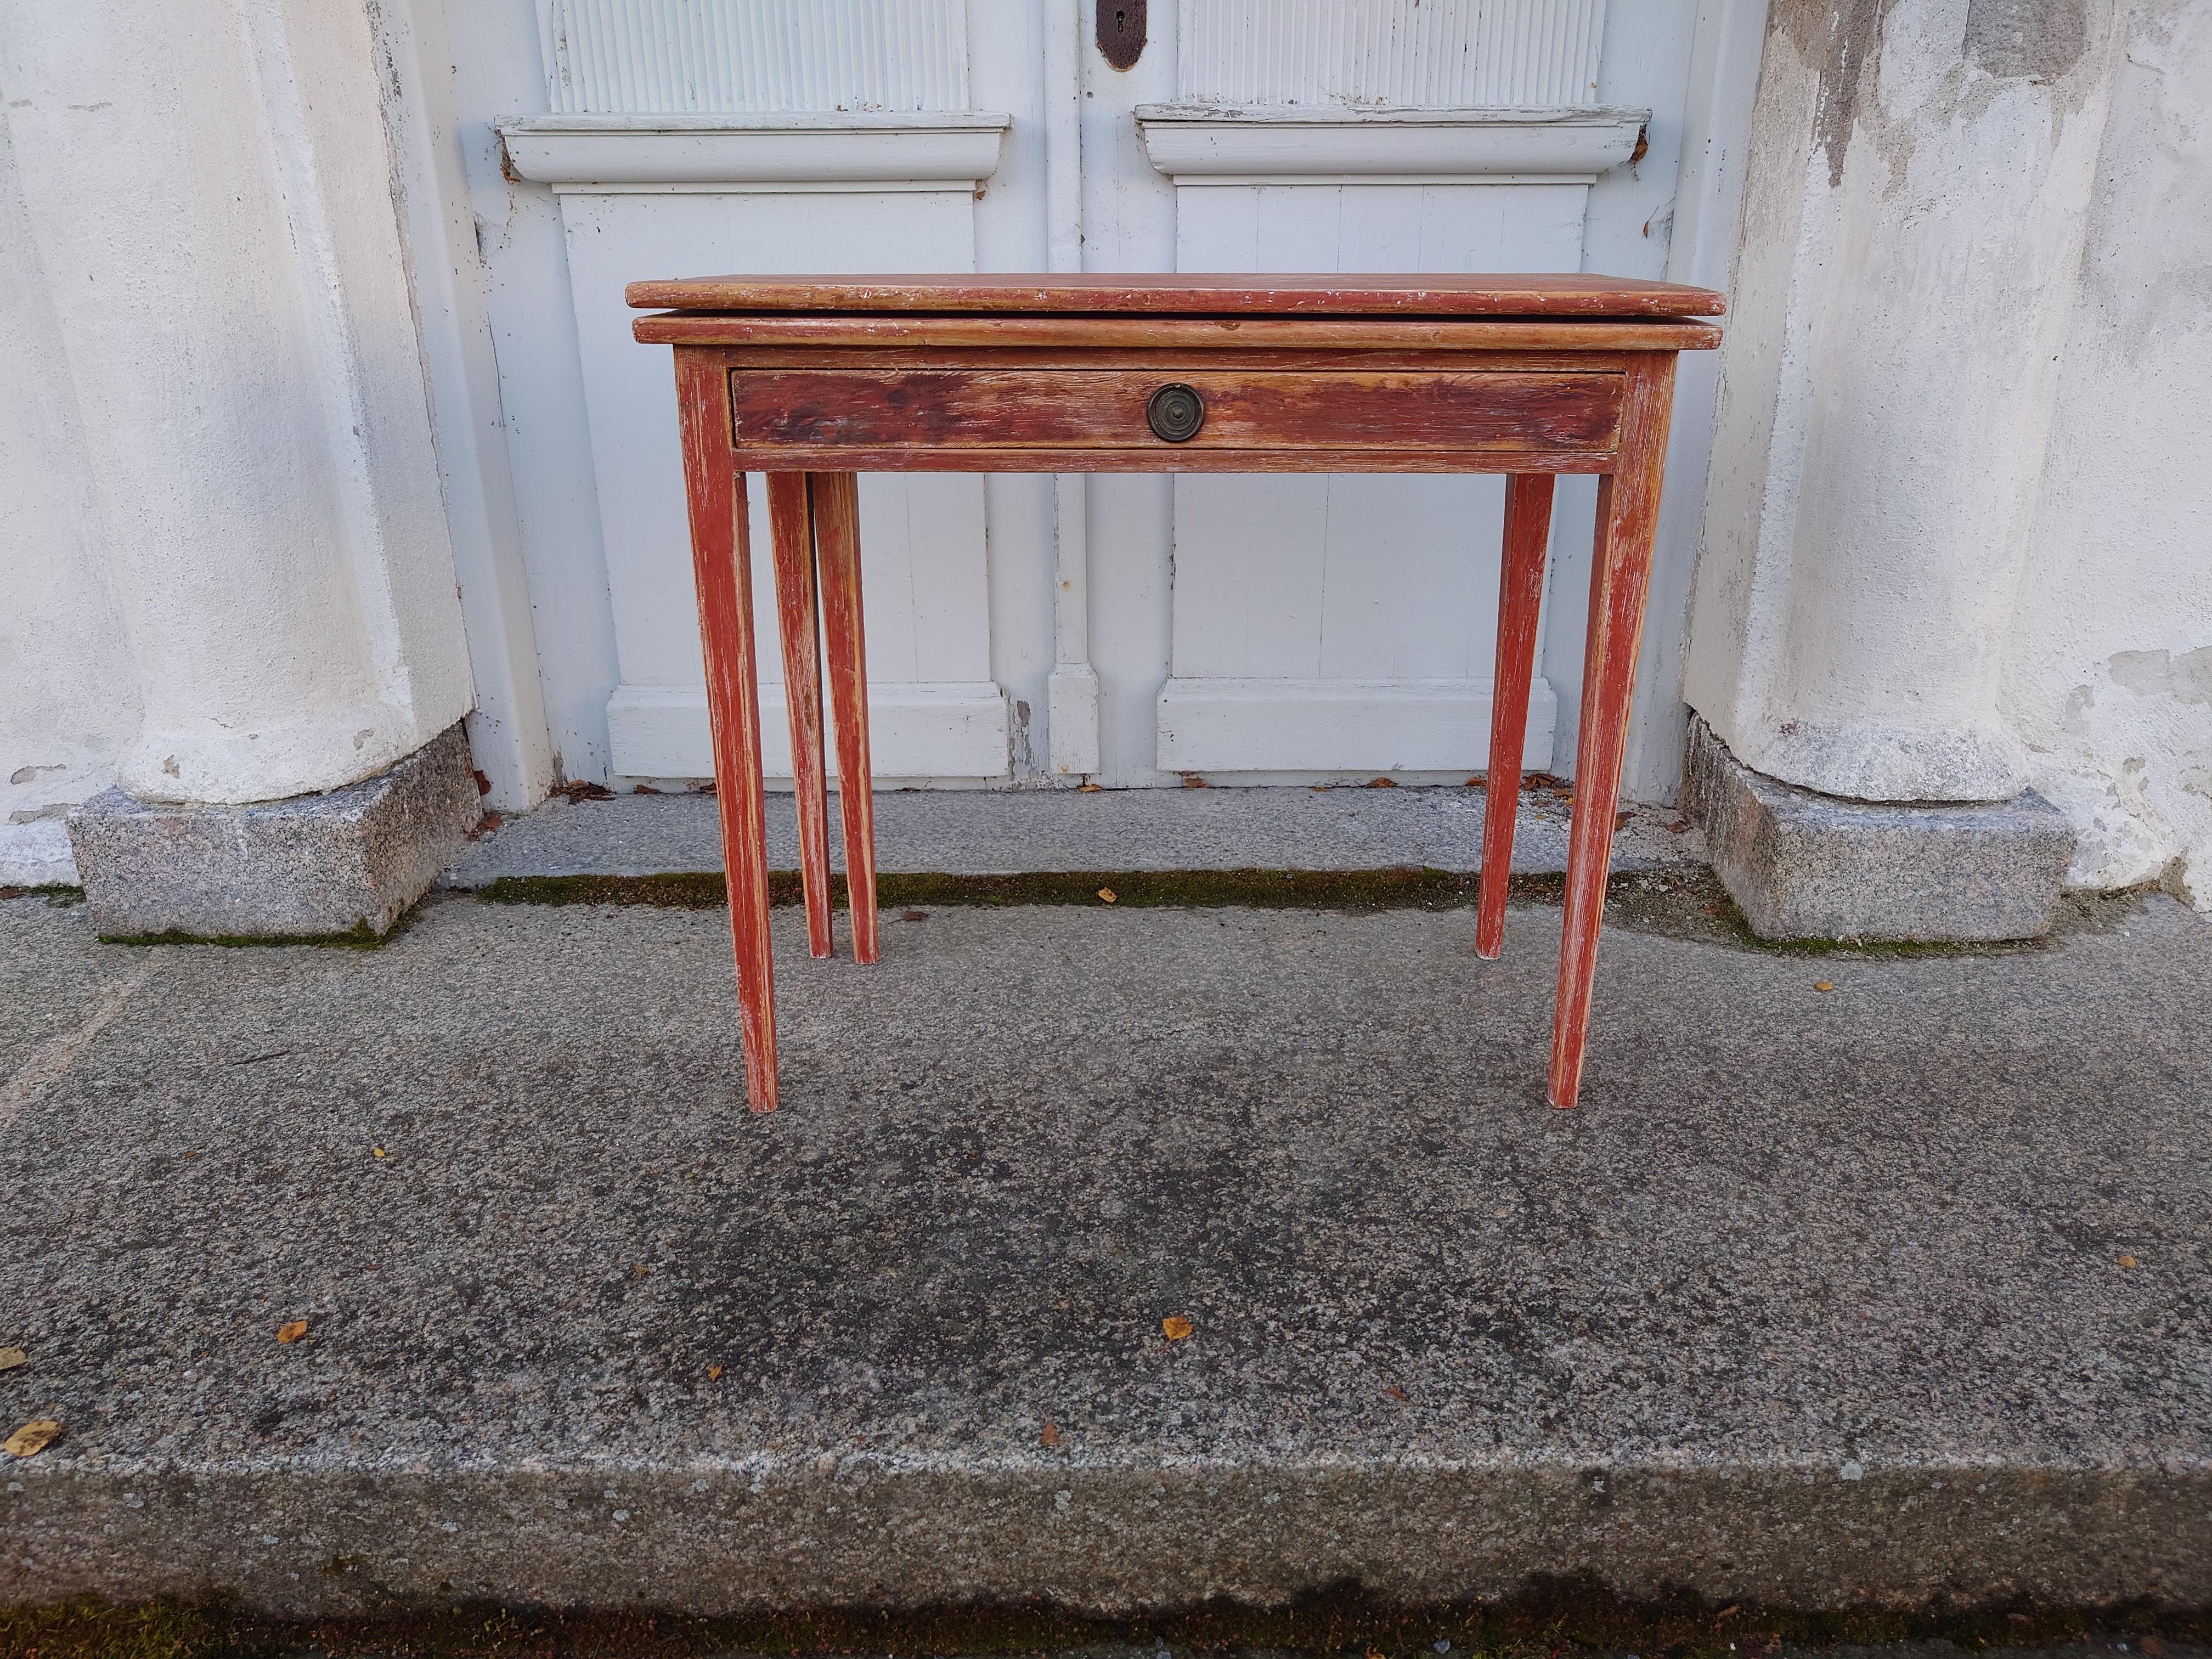 Ein schöner schwedischer Gustavianischer Spieltisch aus den frühen 1800er Jahren.
Der Tisch stammt aus Örnsköldsvik, Nordschweden.
Der Tisch wird von Hand geschabt, um seine charmante ursprüngliche englische rote Farbe zu erhalten.
Der